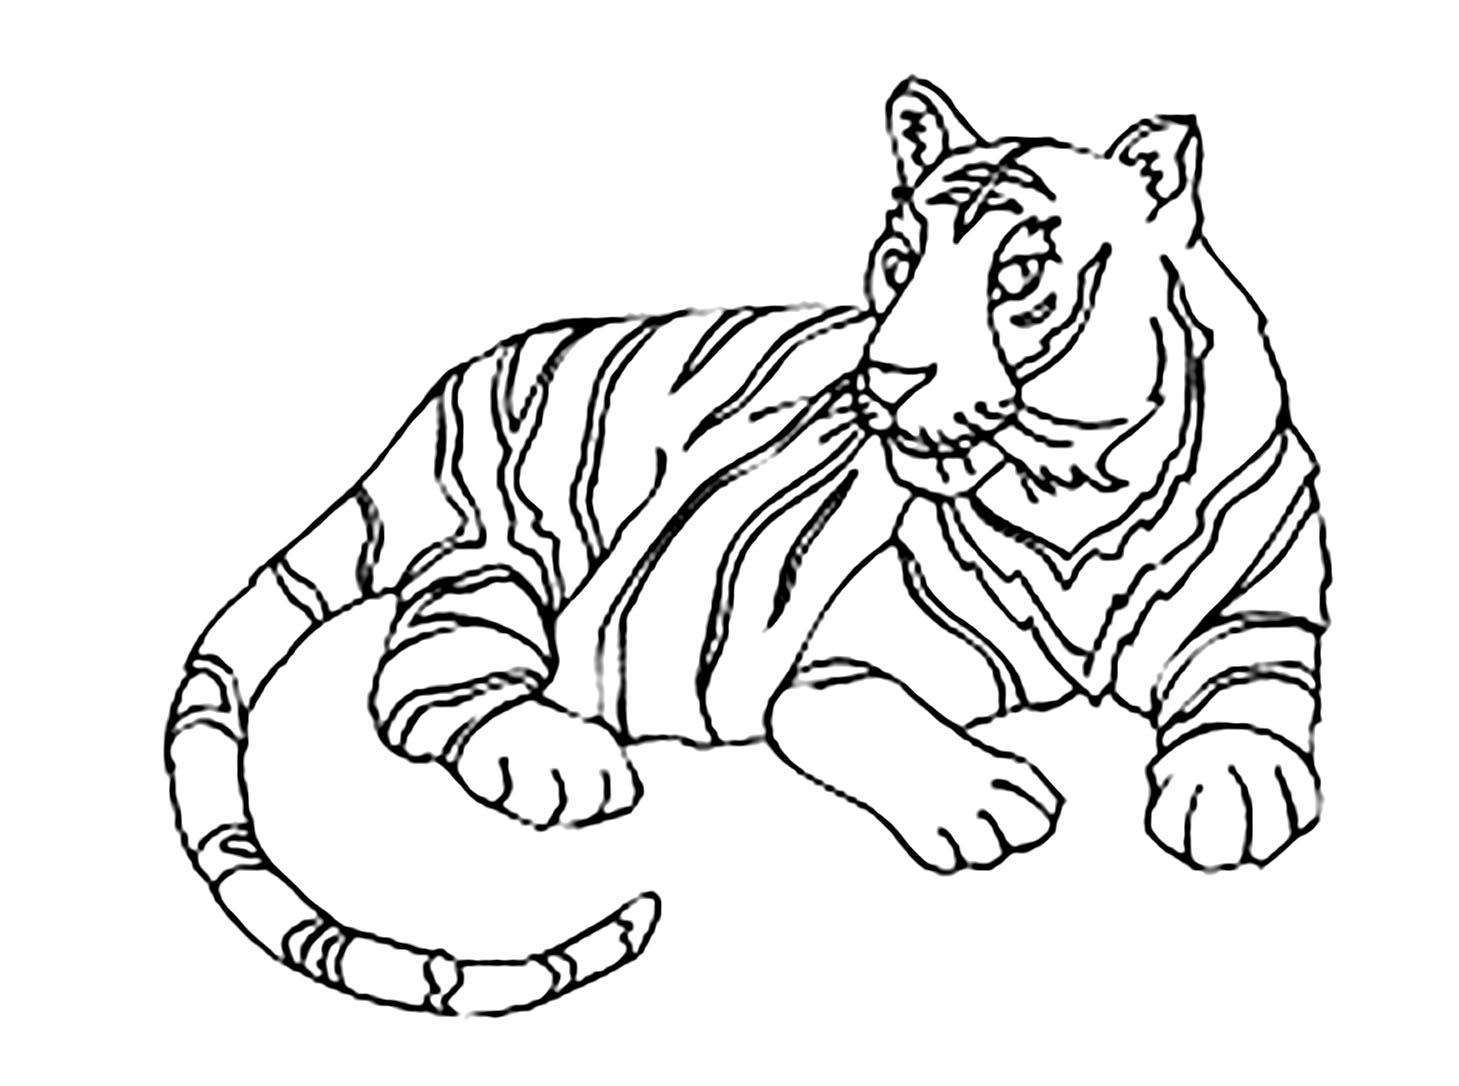 Tranh tô màu con hổ nằm rất đẹp